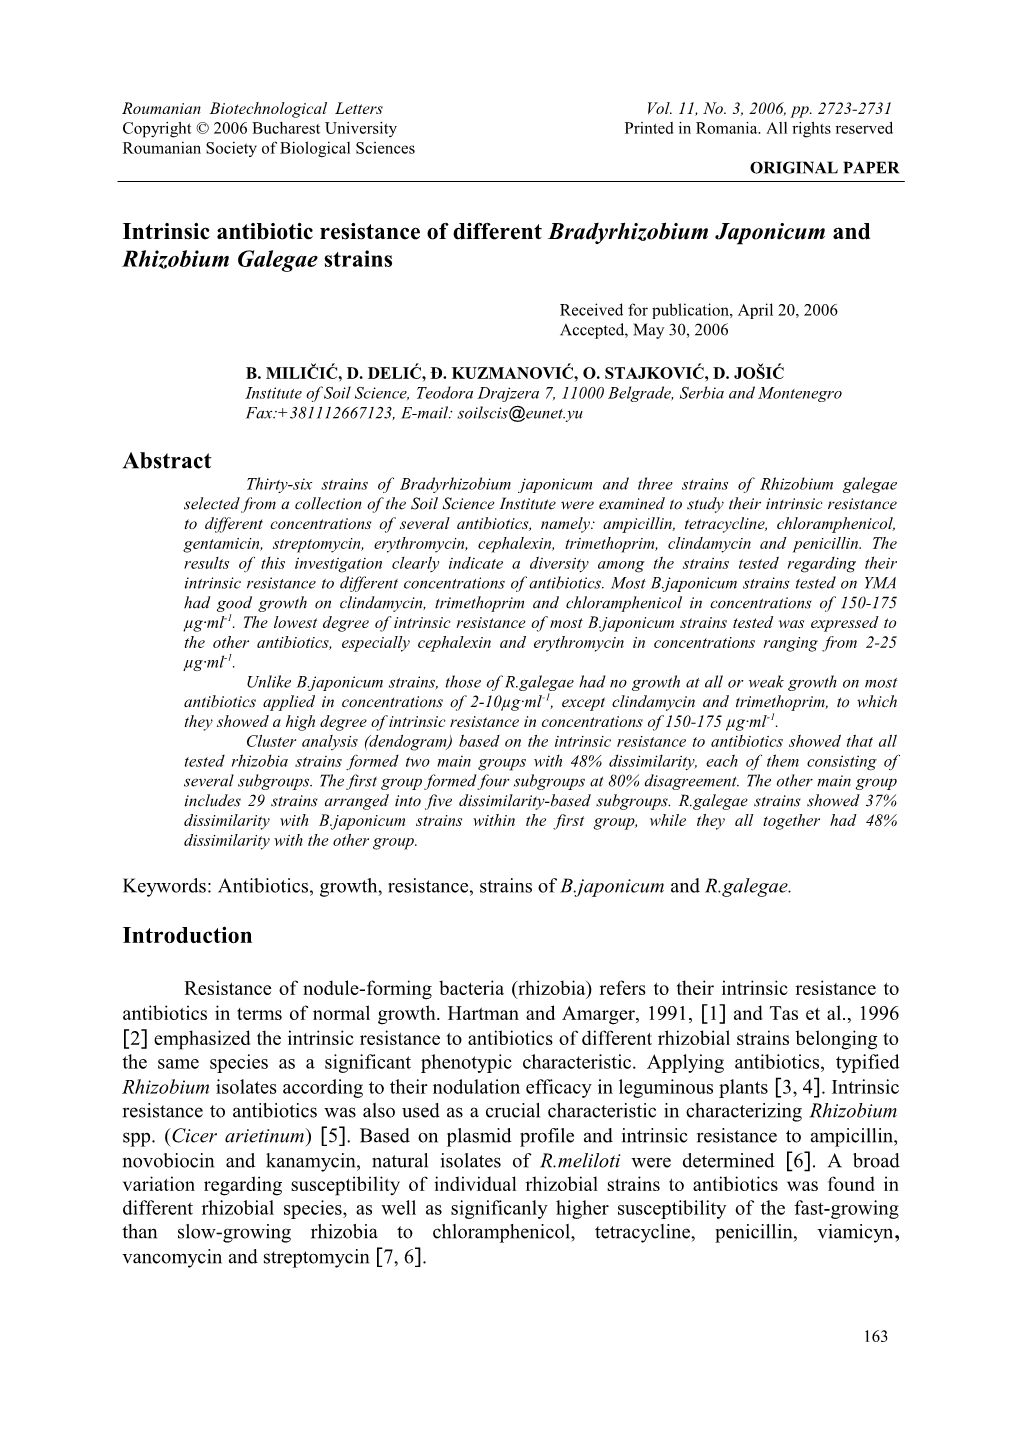 Intrinsic Antibiotic Resistance of Different Bradyrhizobium Japonicum and Rhizobium Galegae